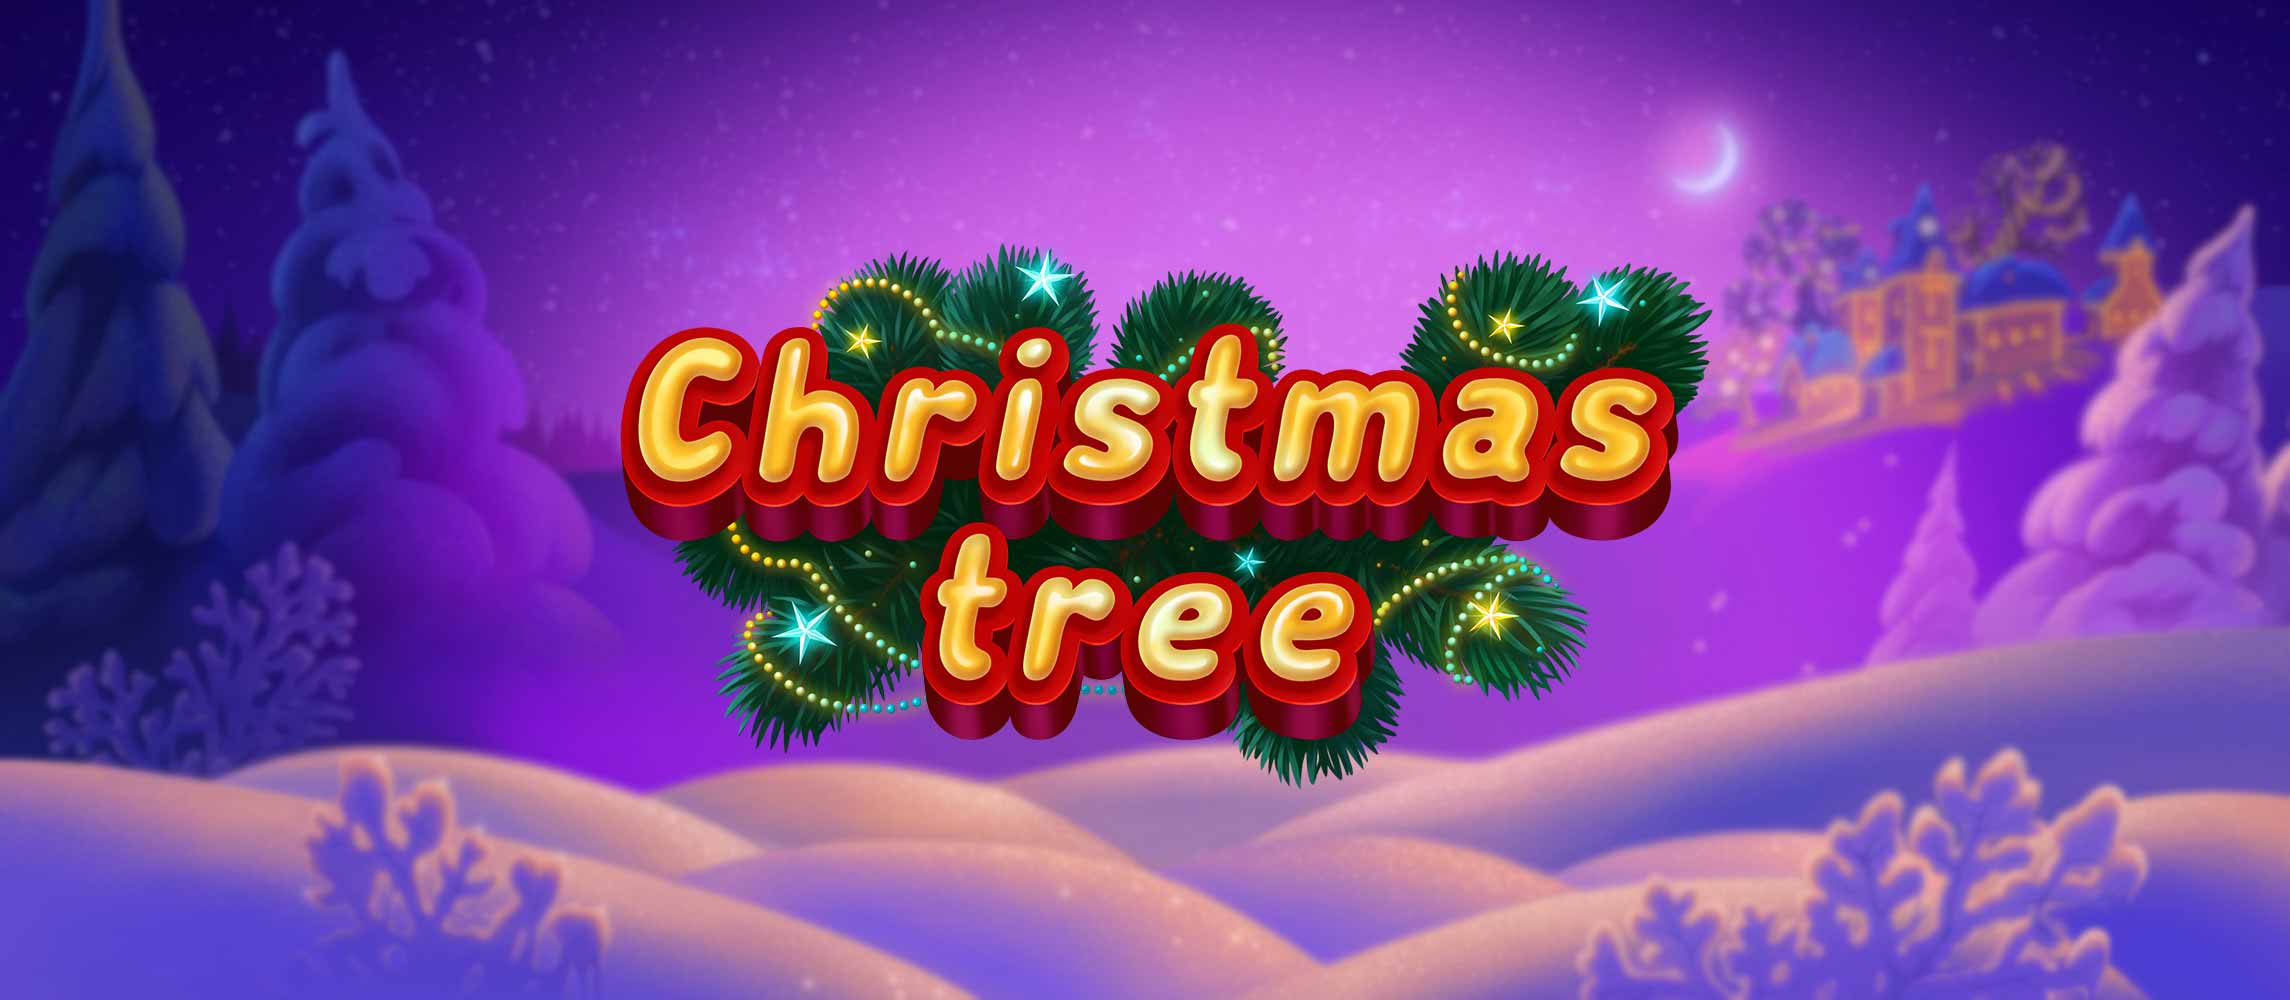 Christmas Tree Slot